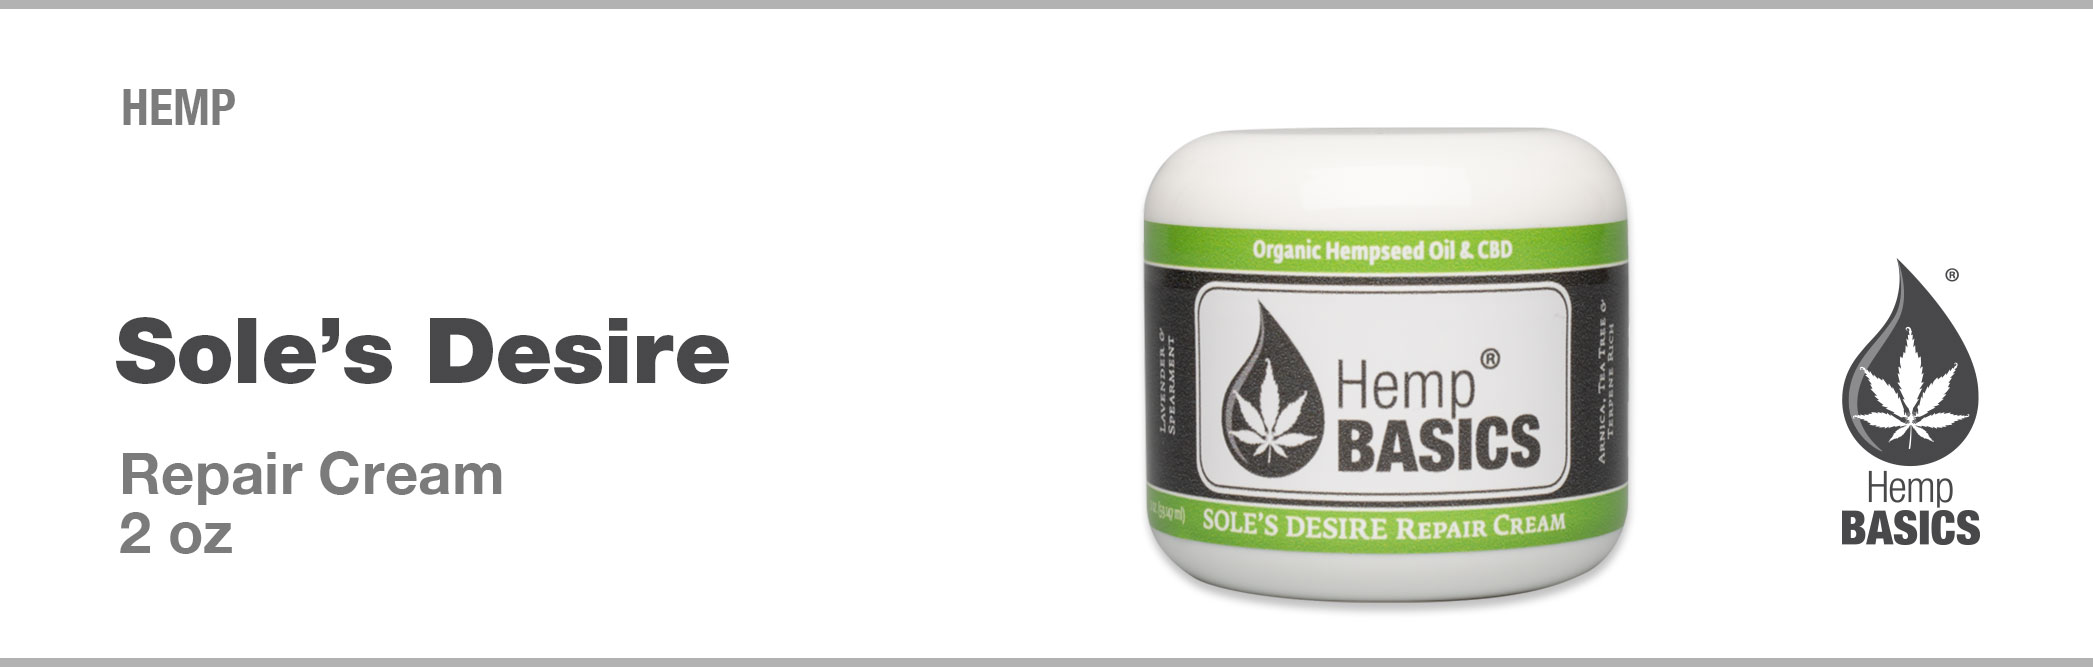 HEMP 2oz Sole's Desire Repair Cream